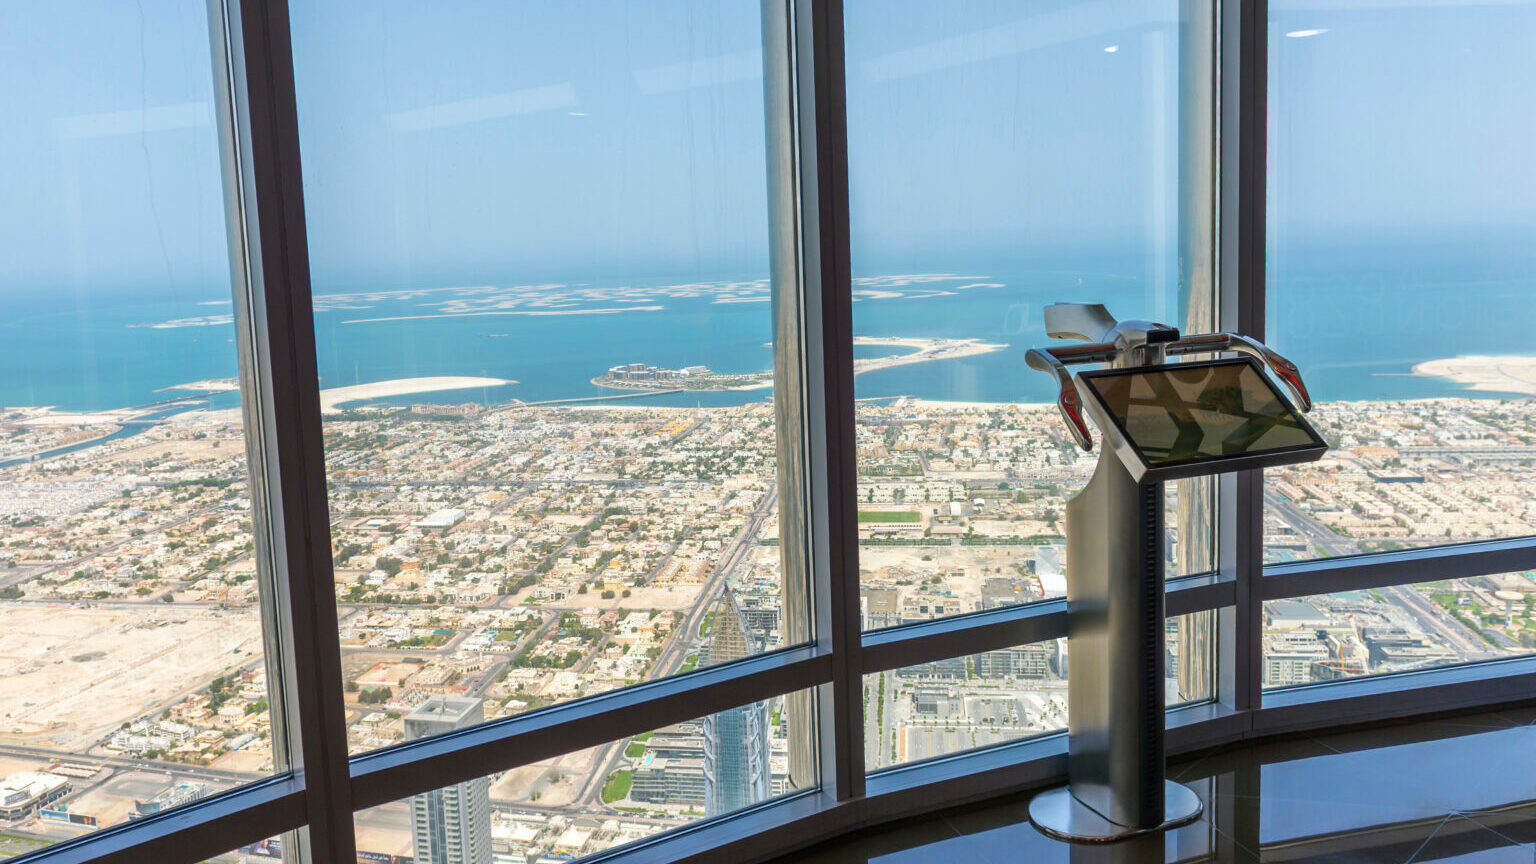 Jumelles interactives au 125ème étage de Burj khalifa